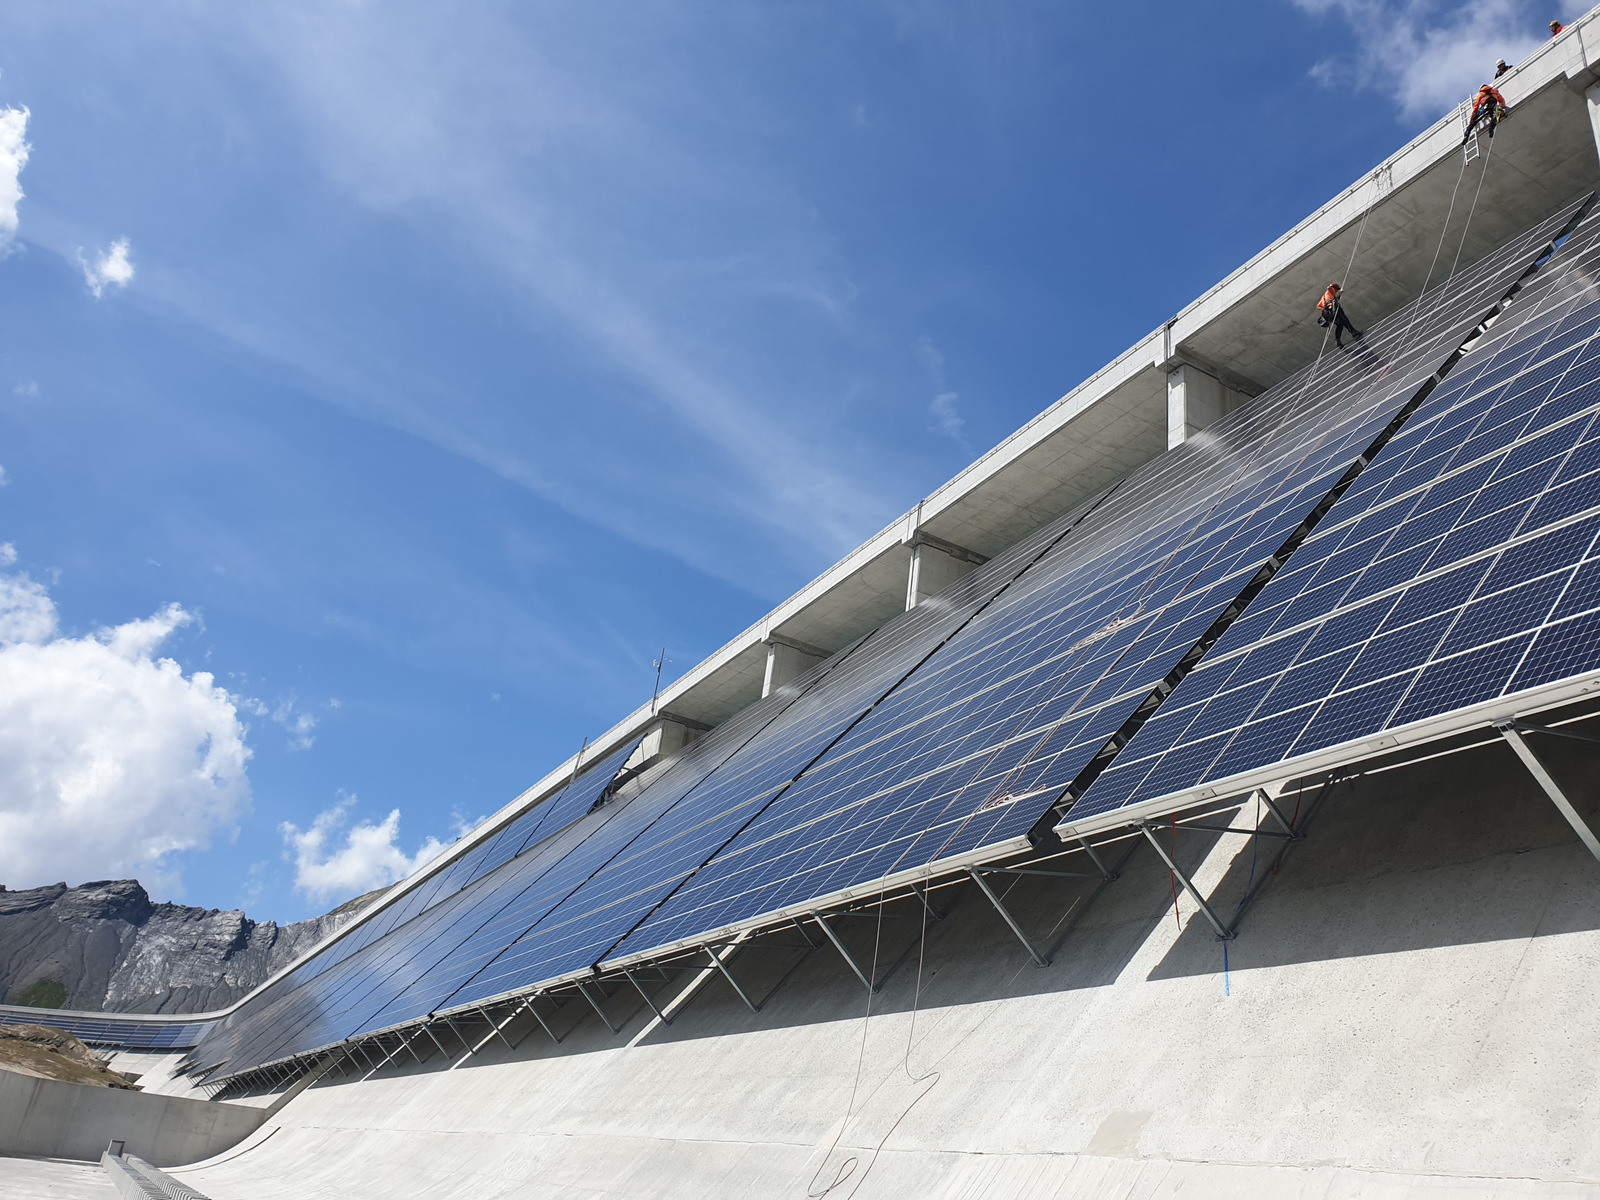 Schweiz: Solaranlage auf Staumauer nun voll in Betrieb